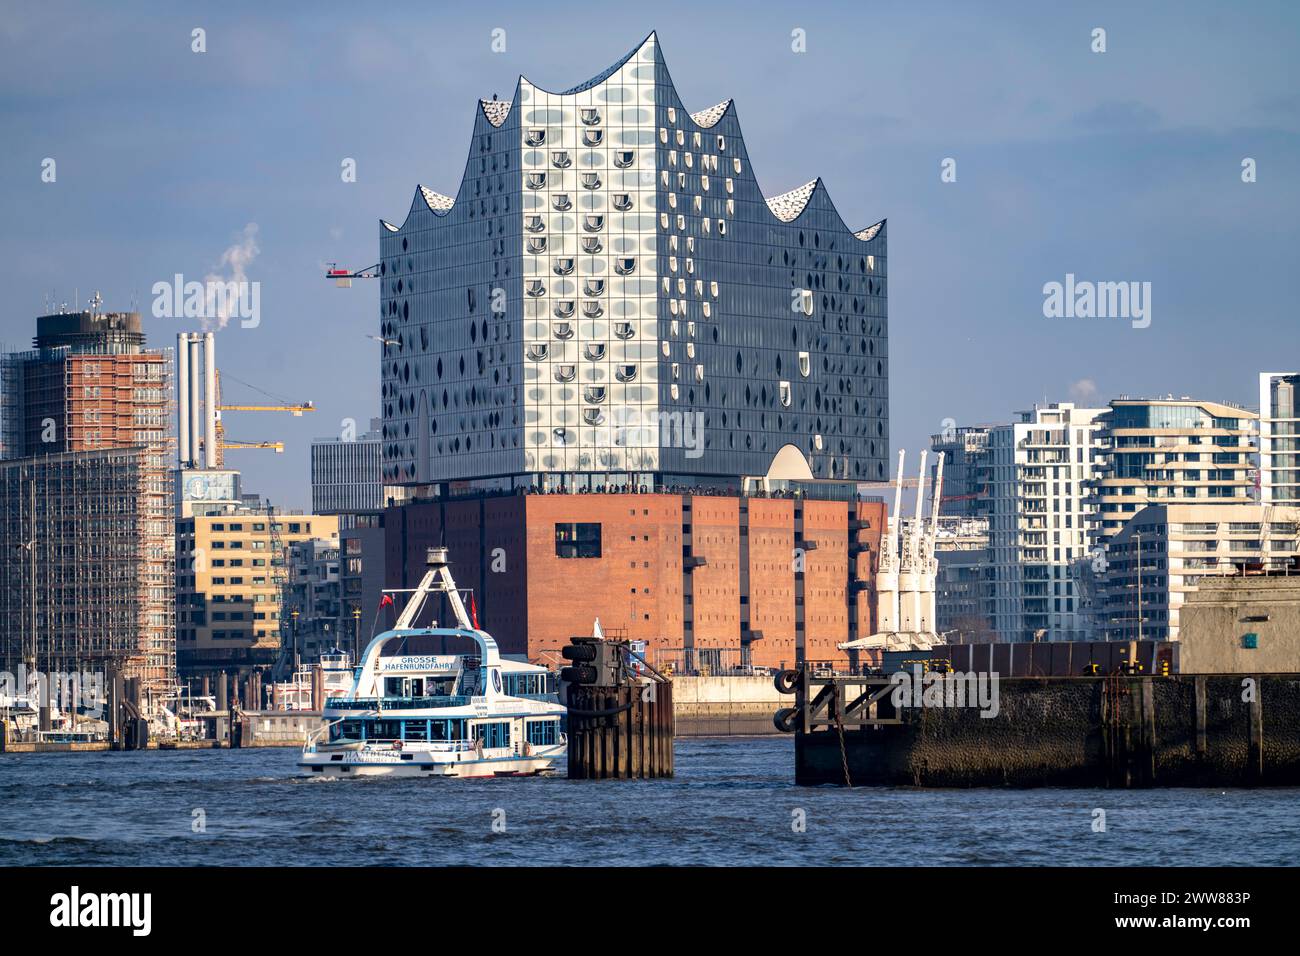 Bateau d'excursion, croisière Grand Port, sur l'Elbe, Skyline, Elbphilharmonie, Hambourg, Allemagne Banque D'Images